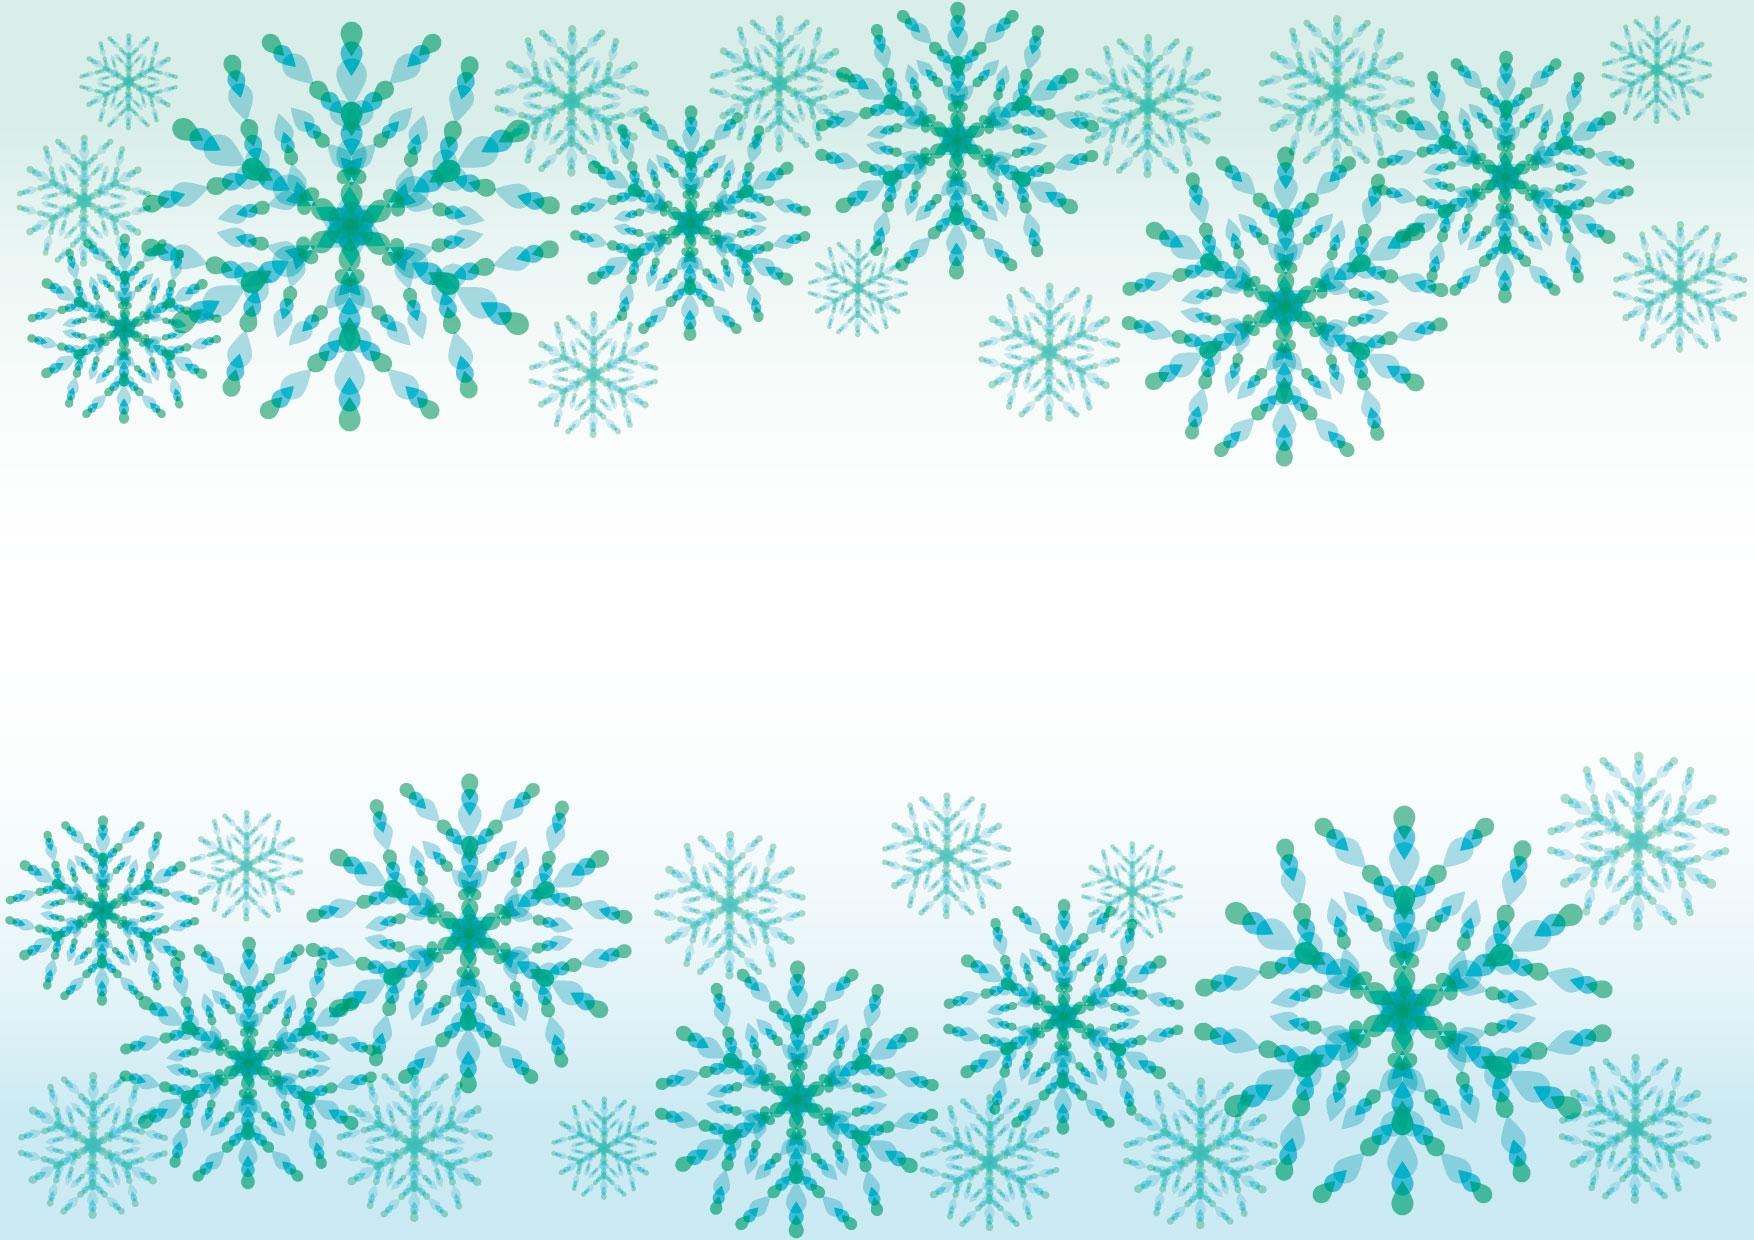 可愛いイラスト無料 雪の結晶 青 背景 Free Illustration